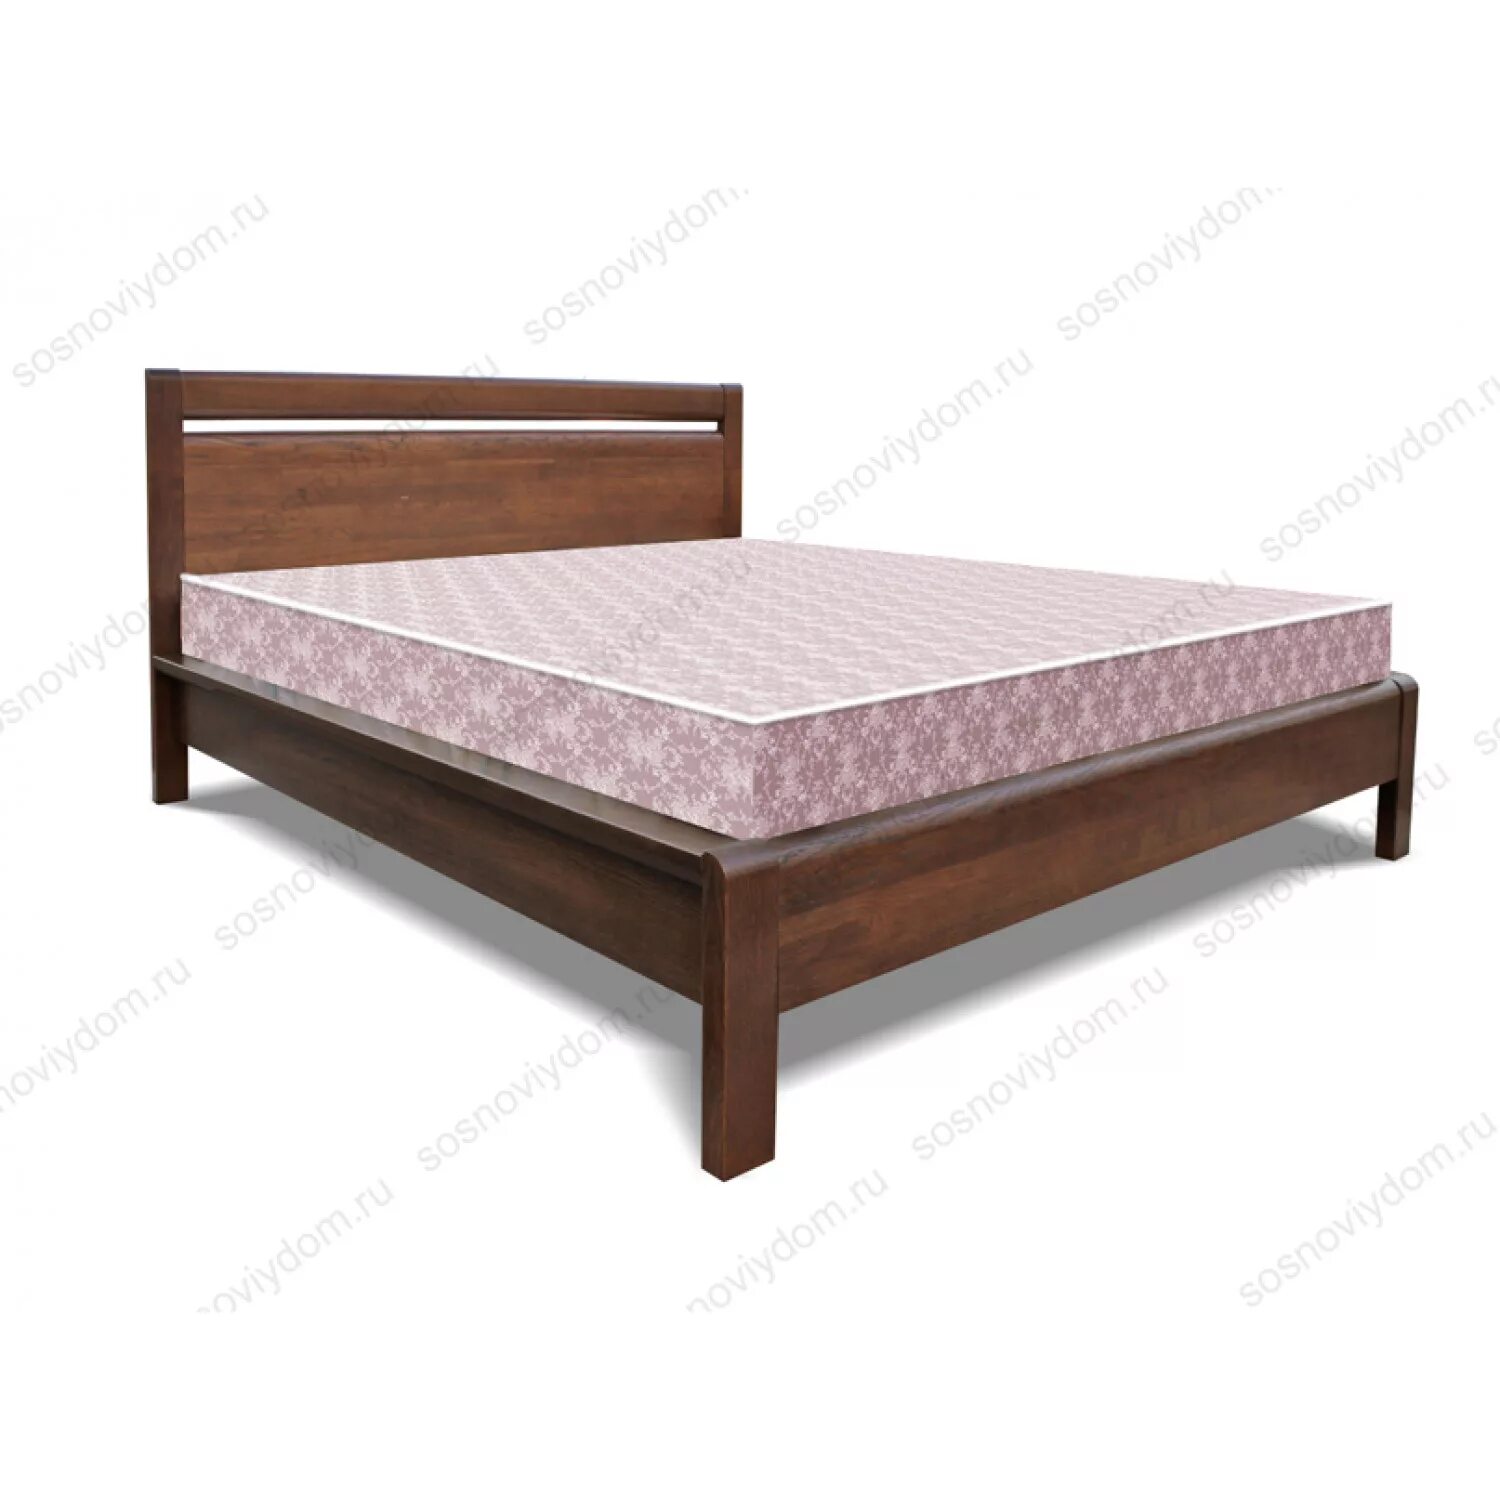 Купить кровать из массива в спб. Кровать массив дерева 140х200 лазурит. Рамона кровать АСМ. Кровать из массива дуба Бриджит 140х200.